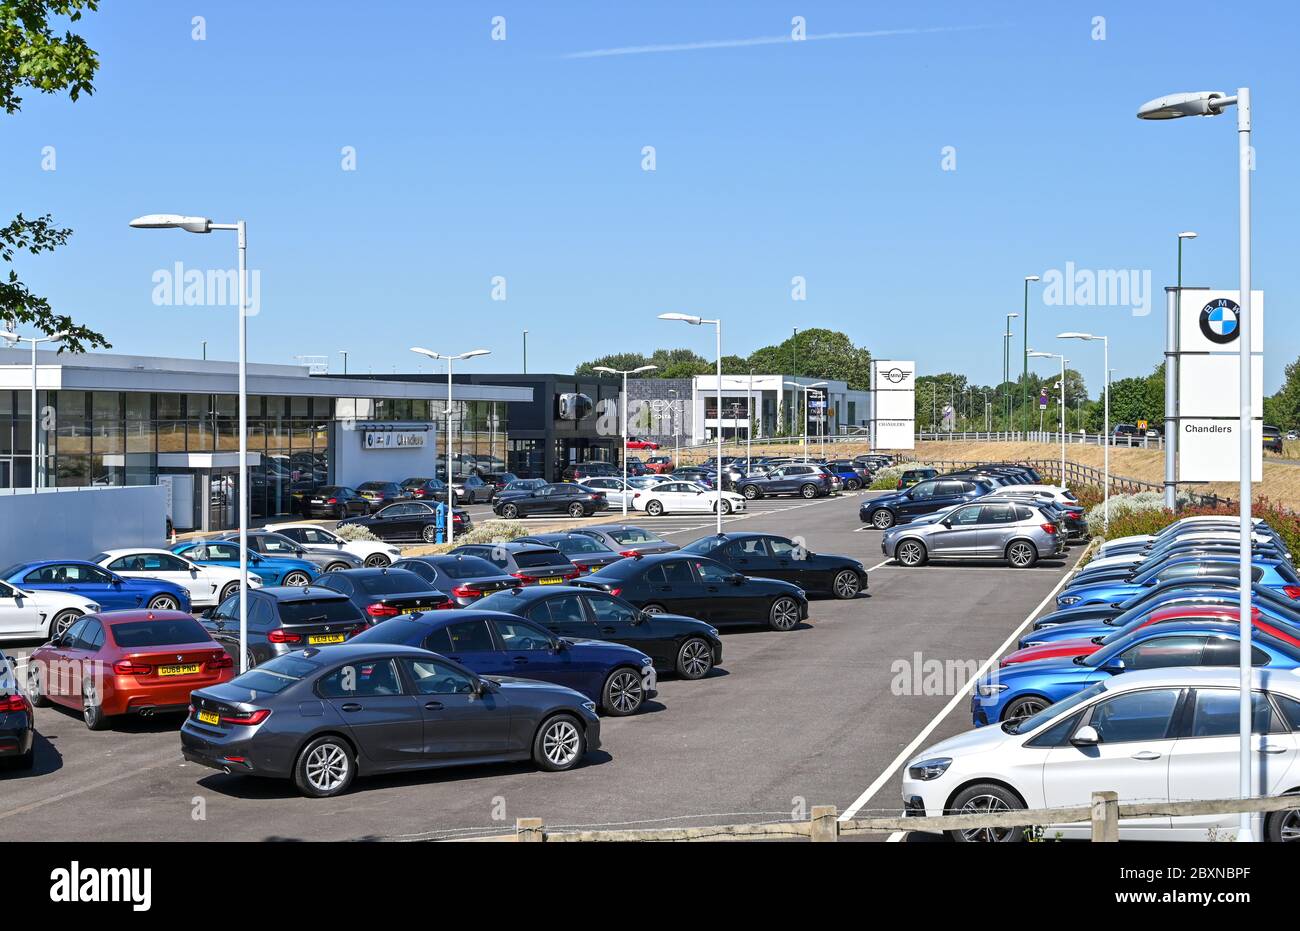 BMW-Autos im Verkauf in Chandlers Auto Showrooms in Rustington West Sussex, die wieder geöffnet sind, nachdem Coronavirus Lockdown Beschränkungen wurden erleichtert Photog Stockfoto